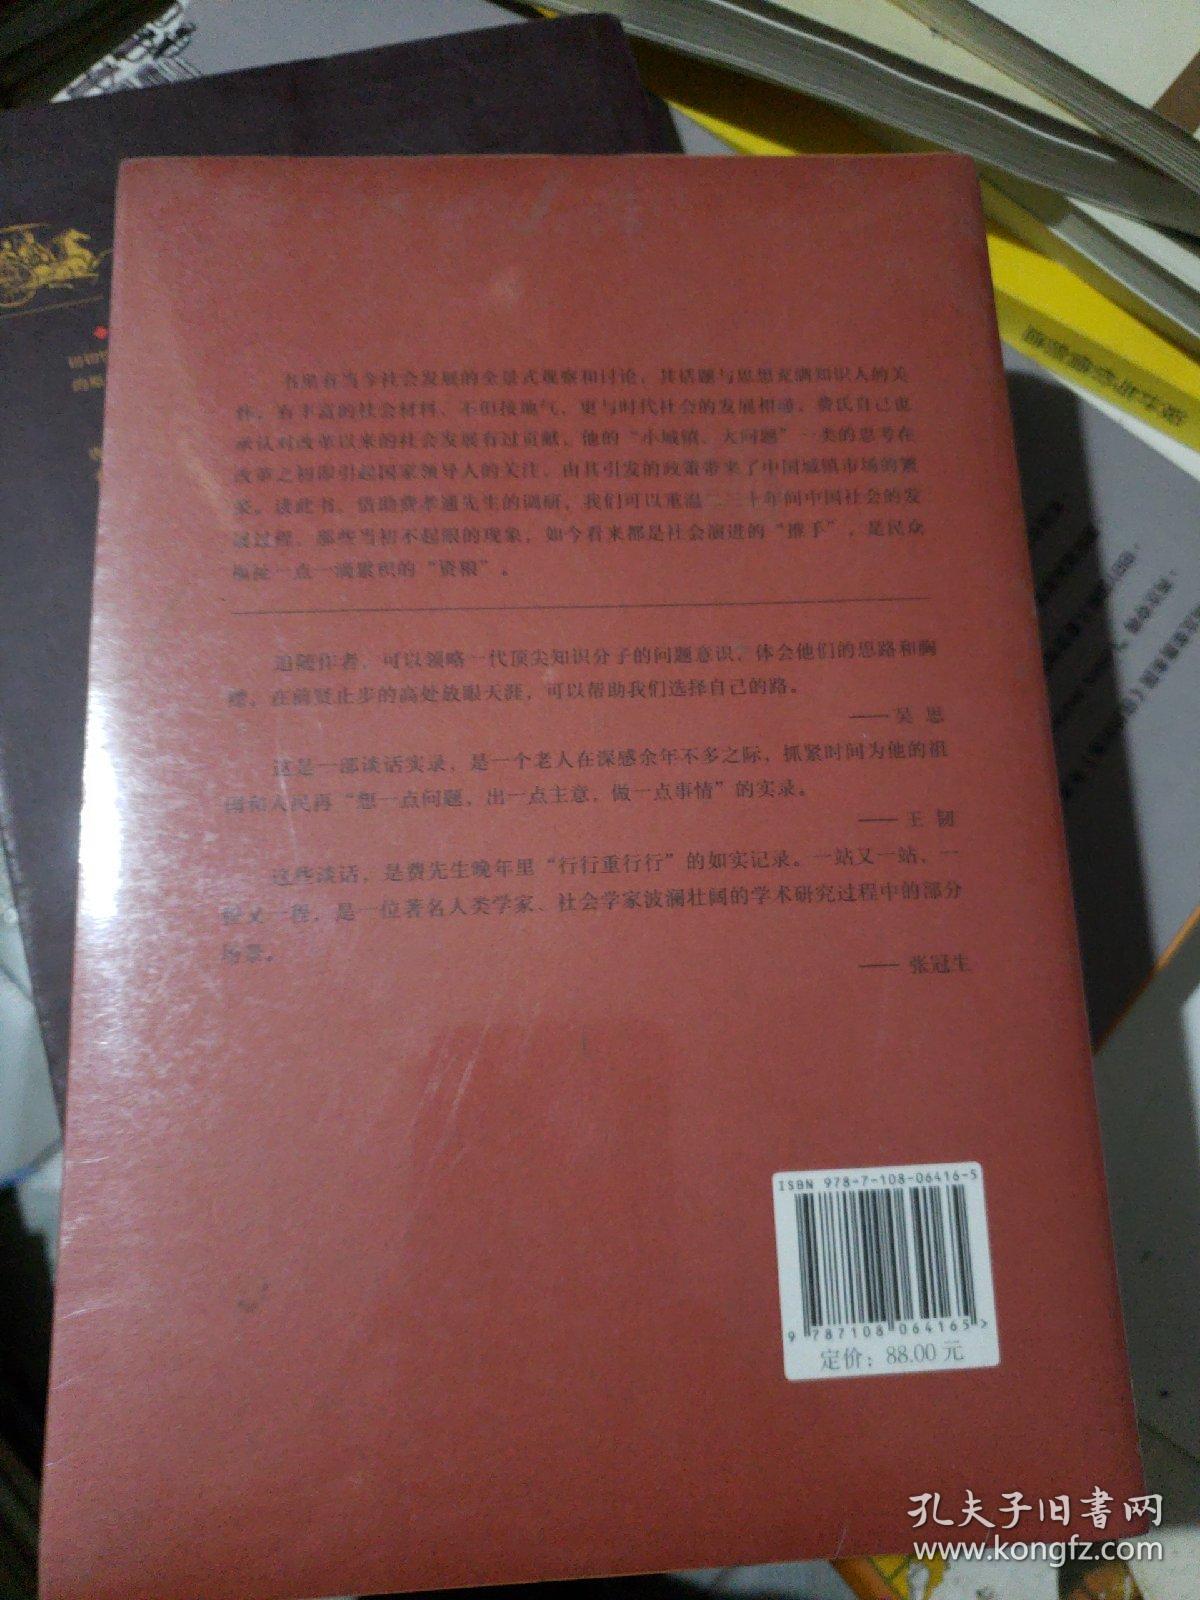 费孝通晚年谈话录（1981—2000）